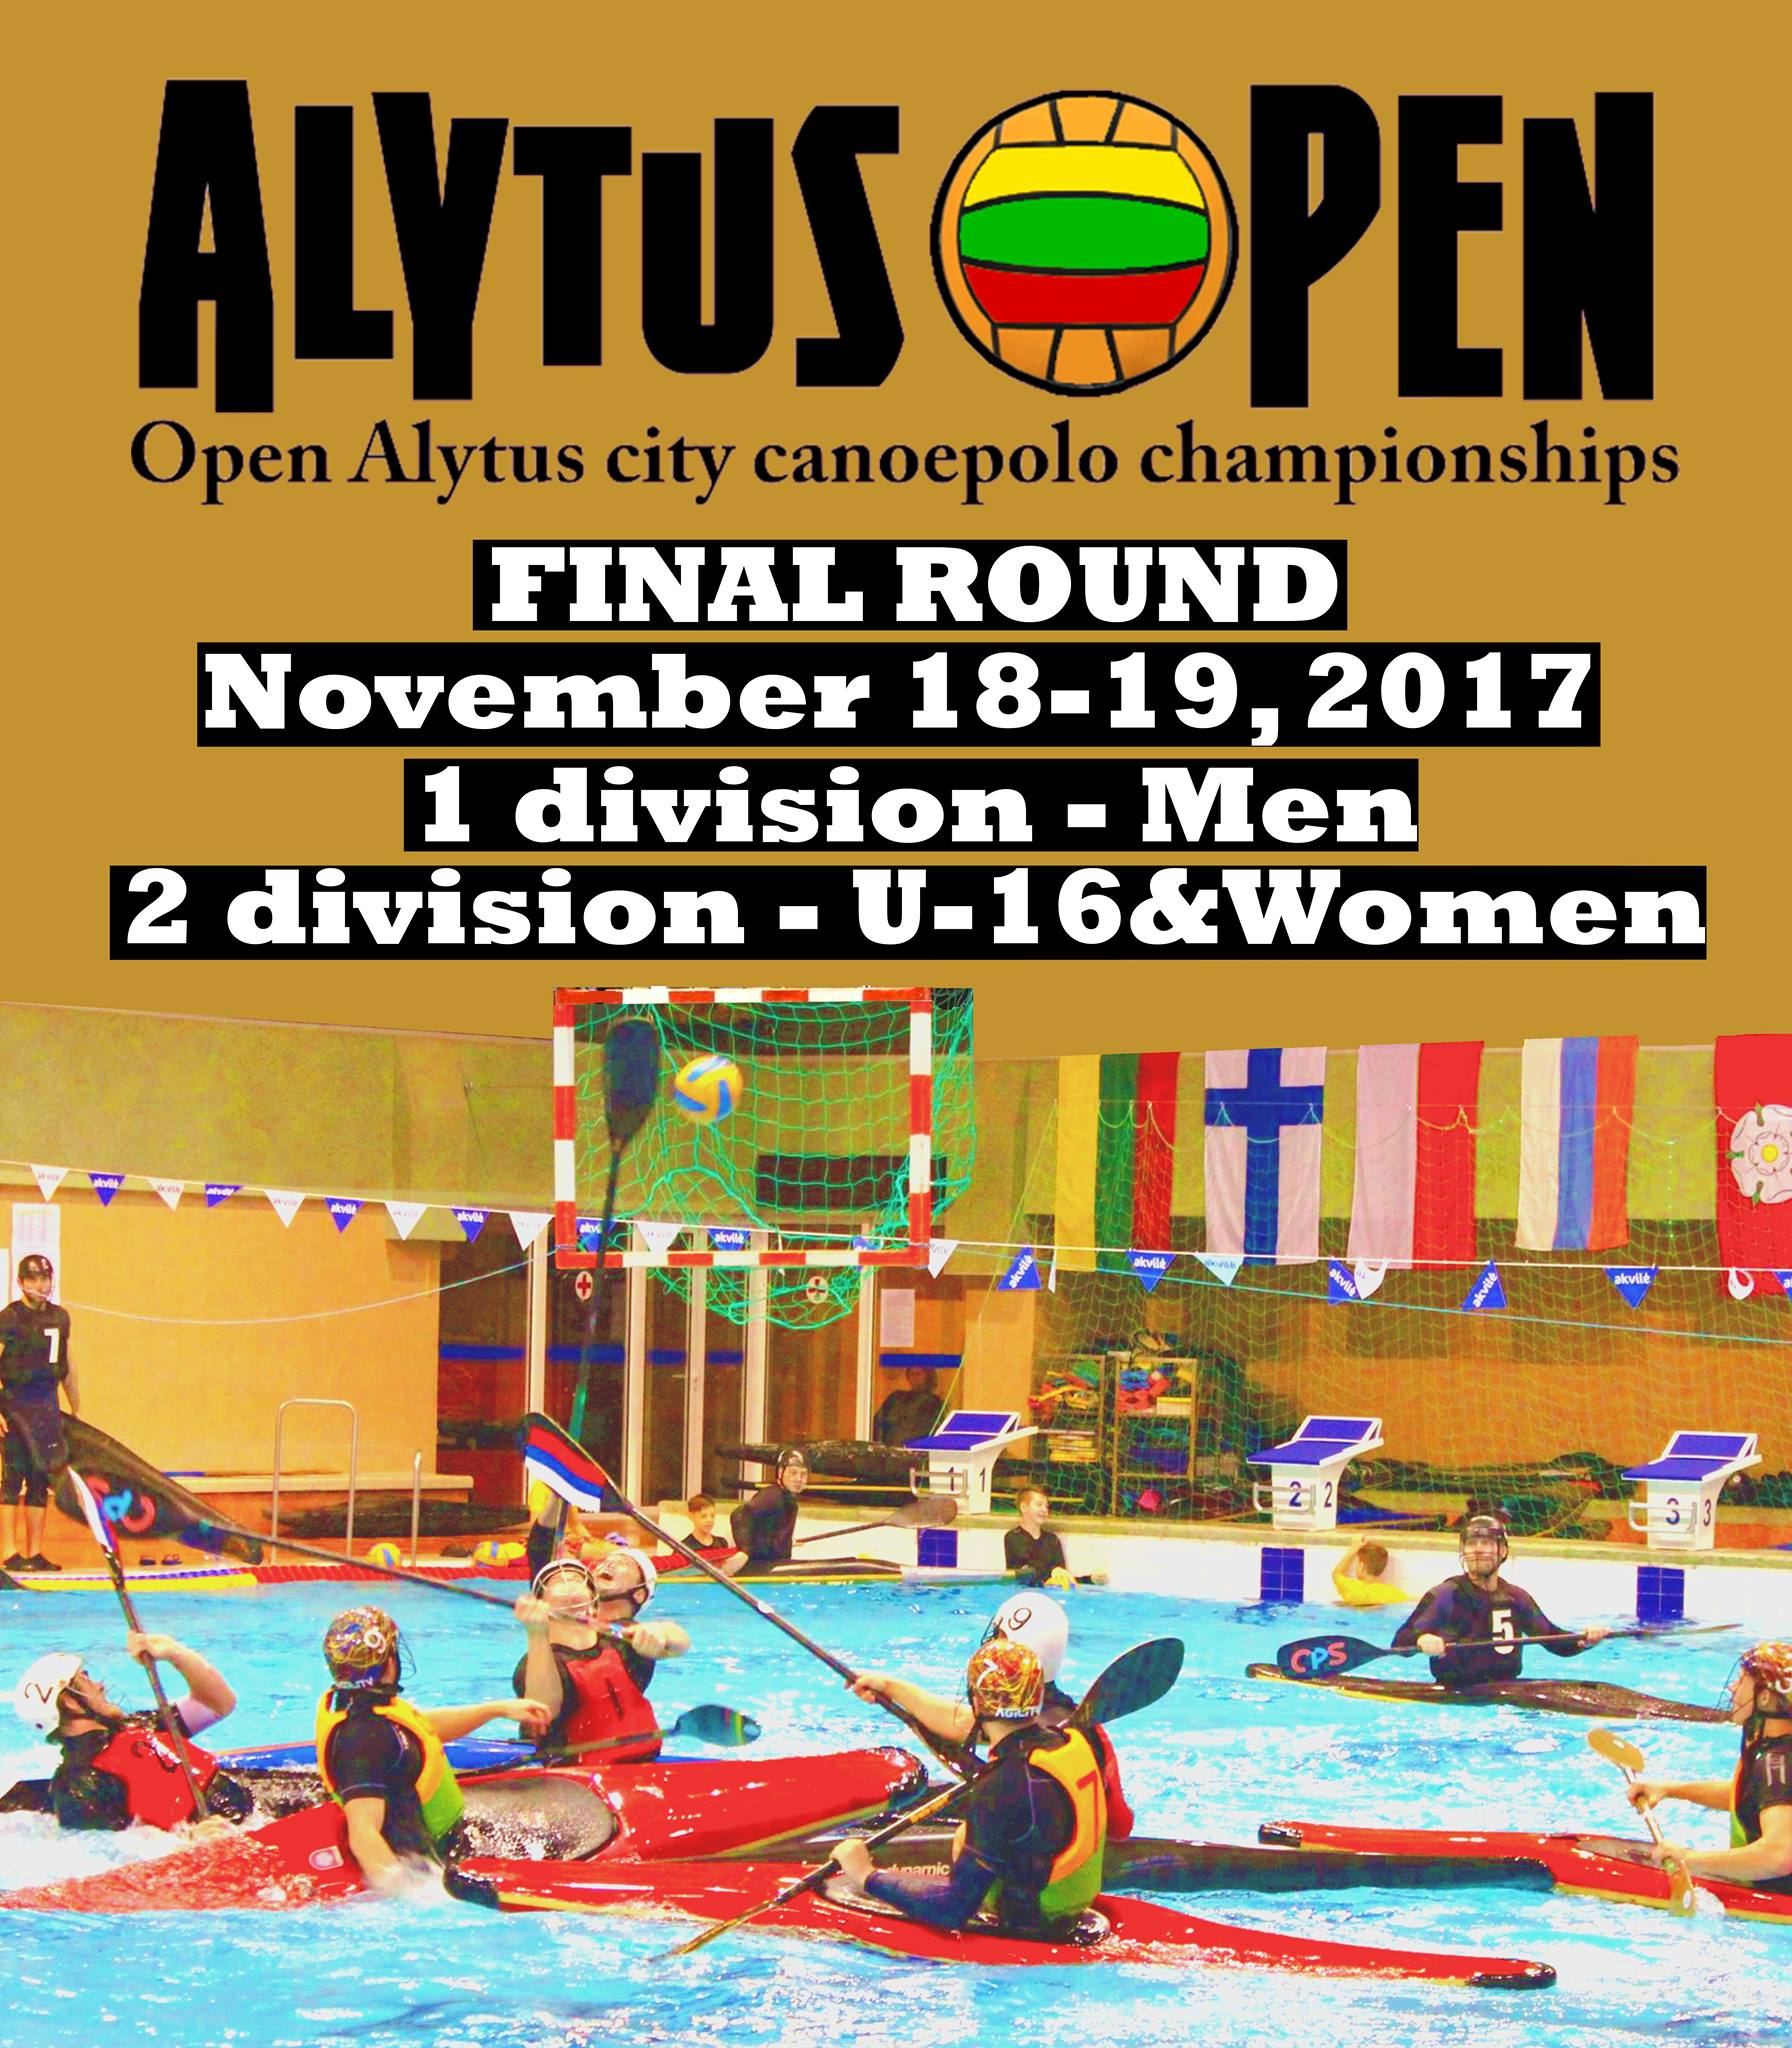 Alytus open 2017